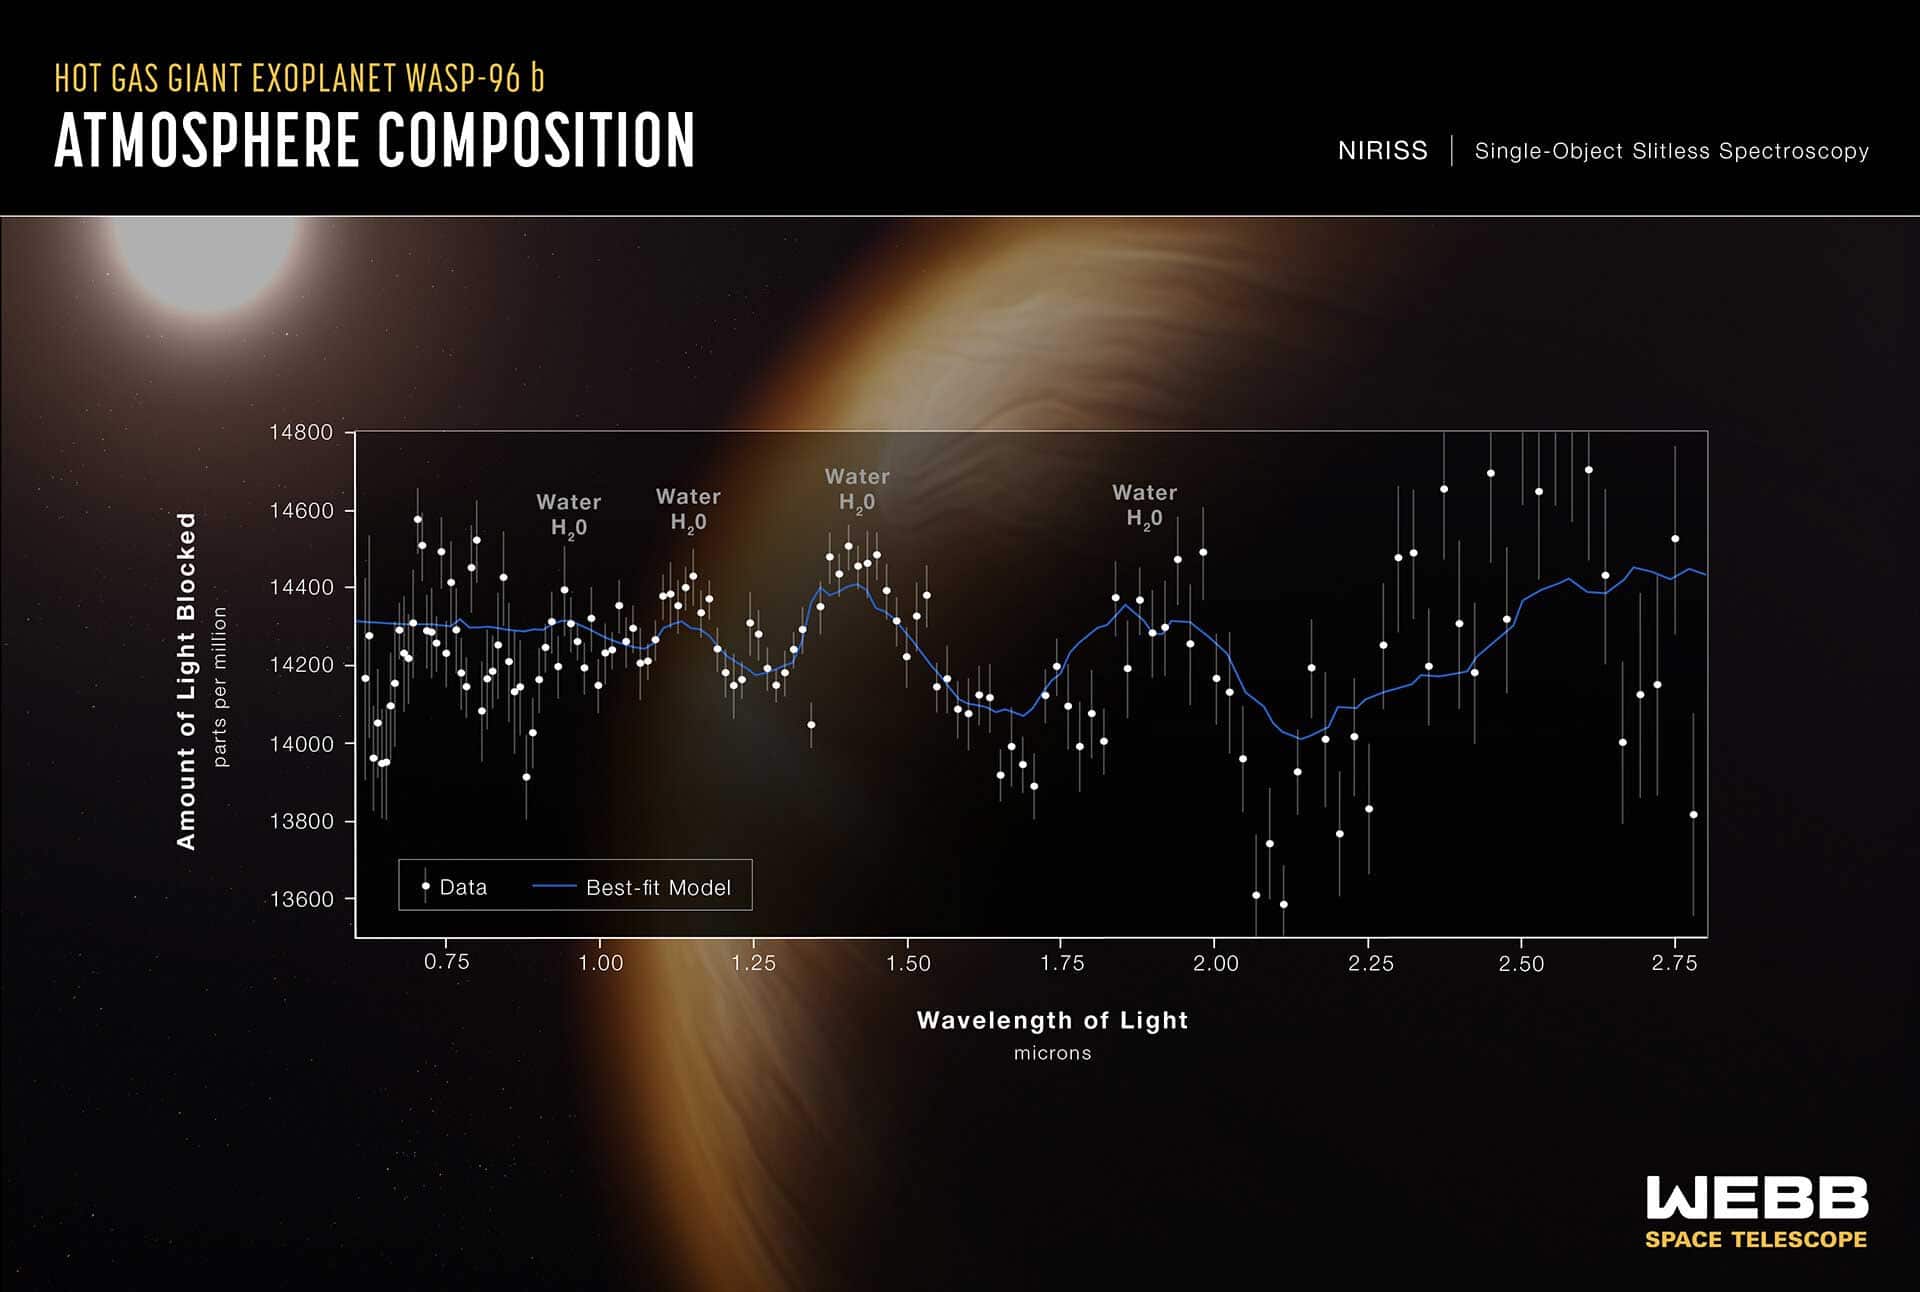 Webb montre en détail l'atmosphère chaude de la planète lointaine.